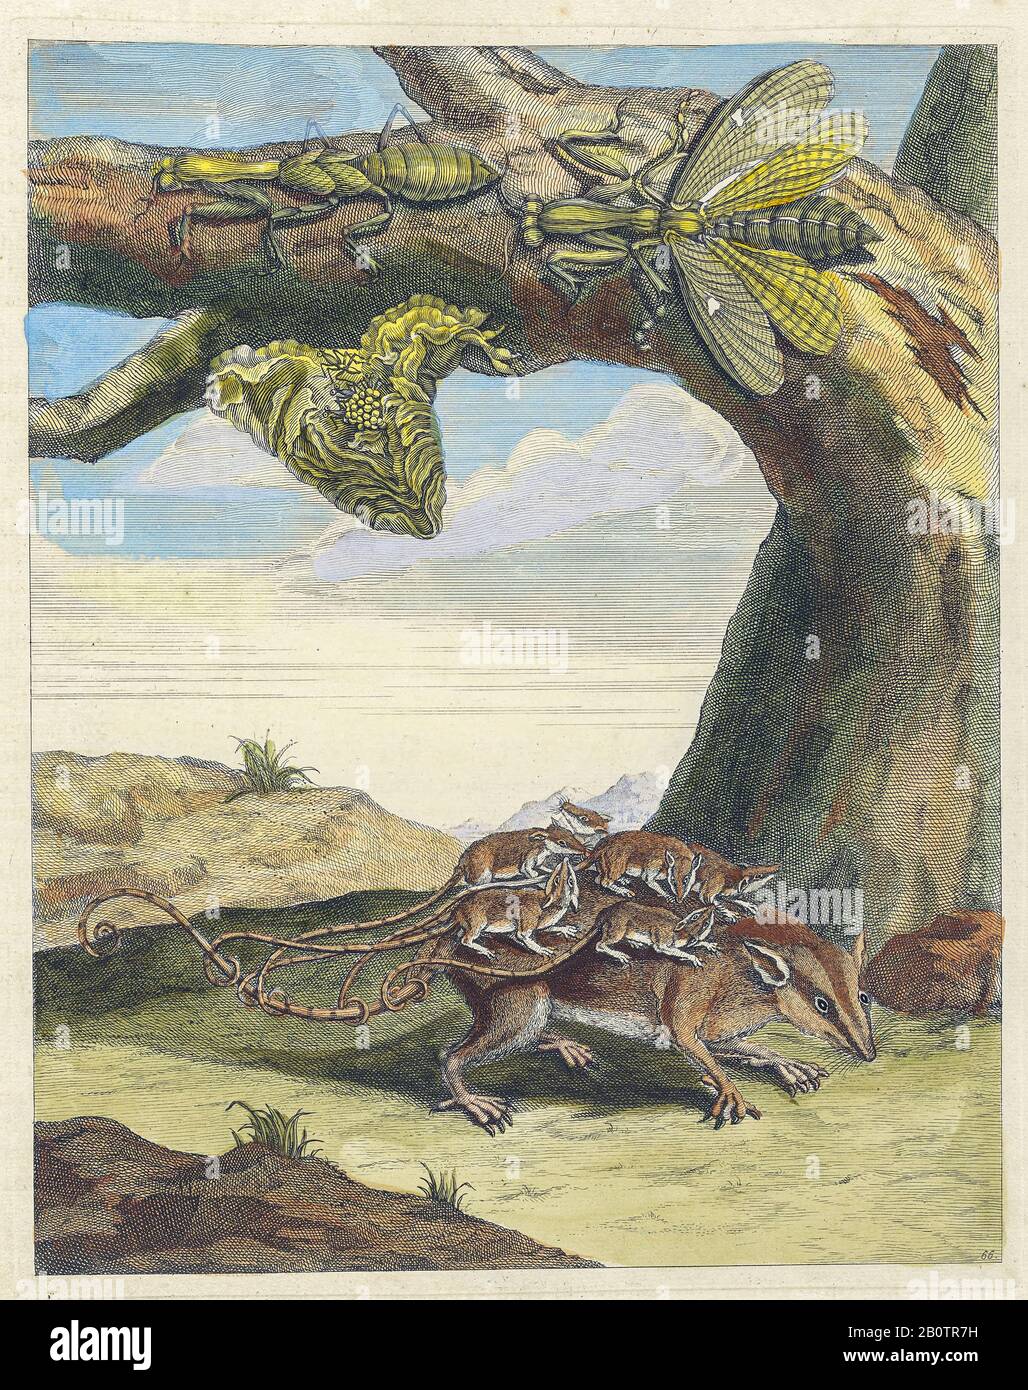 Opossum und mantid Lebenszyklus von Metamorphosis insectorum Surinamensium (Surinam Insects) ein handfarbenes Buch aus dem 18. Jahrhundert von Maria Sibylla Merian, das 1719 in Amsterdam veröffentlicht wurde Stockfoto